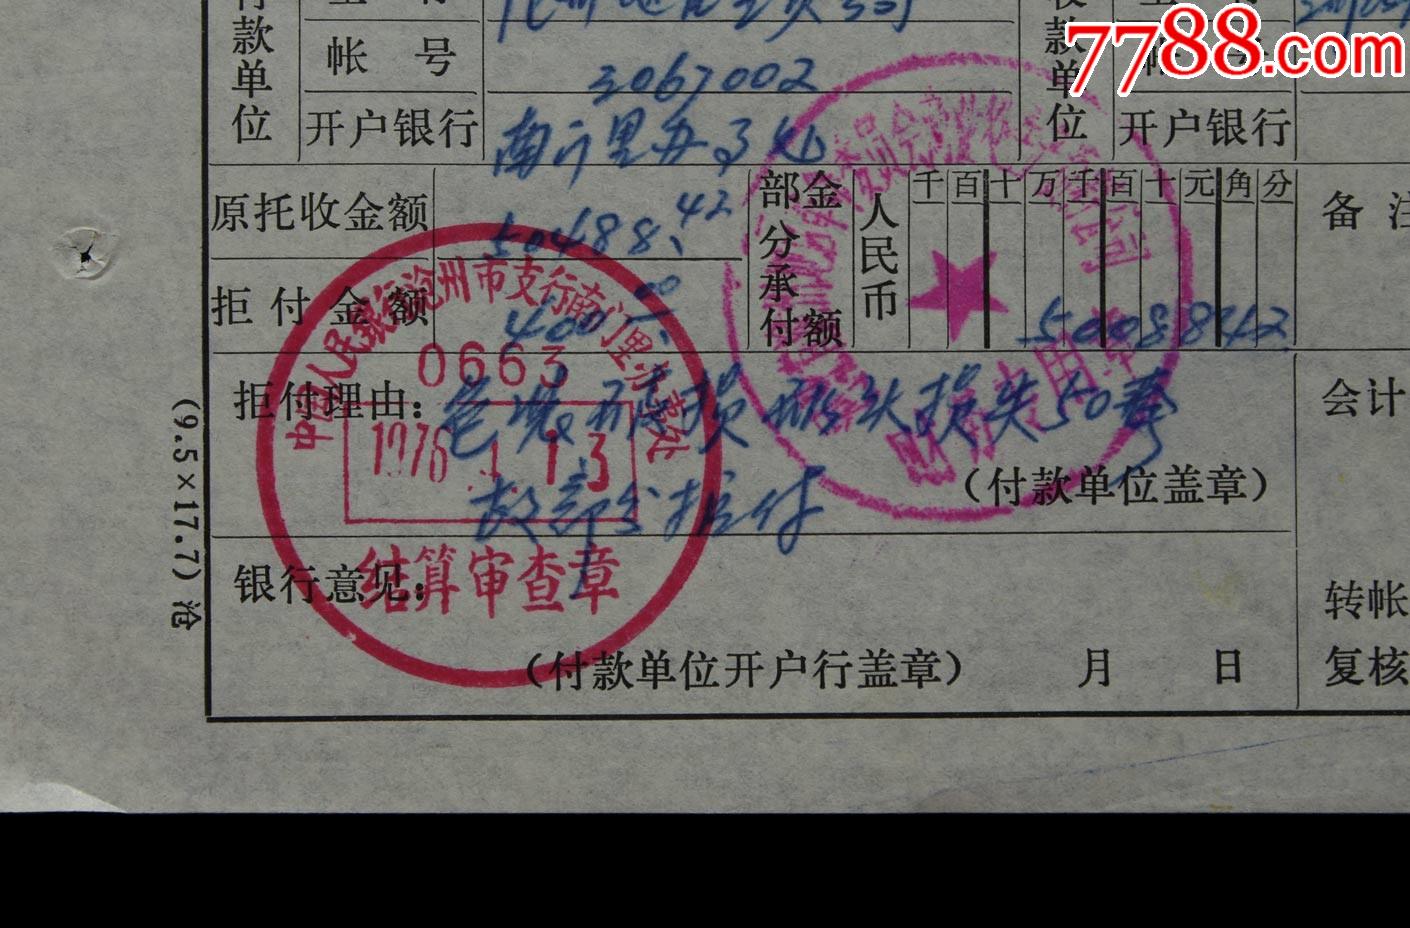 1976年中国人民银行沧州市支行南门里办事处拒付单据一张